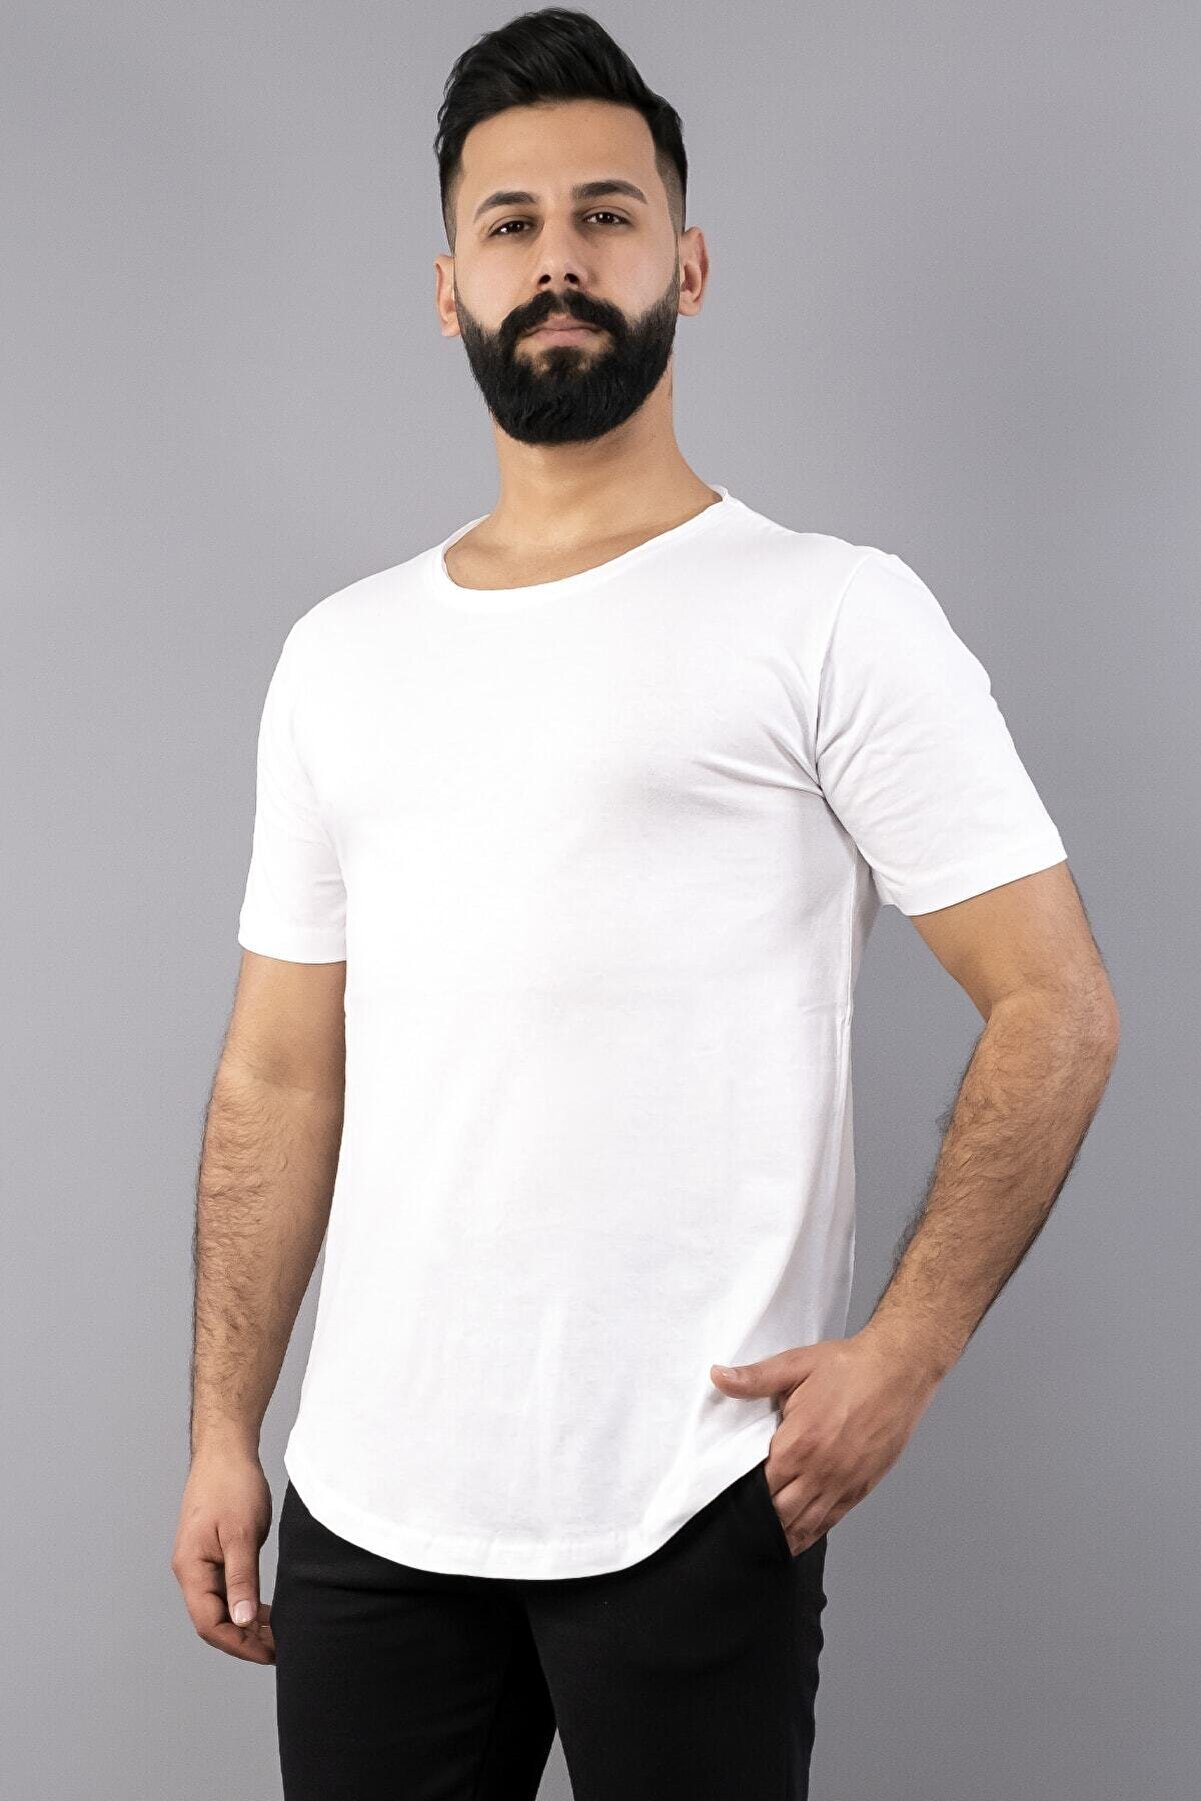 NewCabin Beyaz Erkek Tişört Oval Kesimli Slim Fit Tişört Standart Kesim(besokt-s